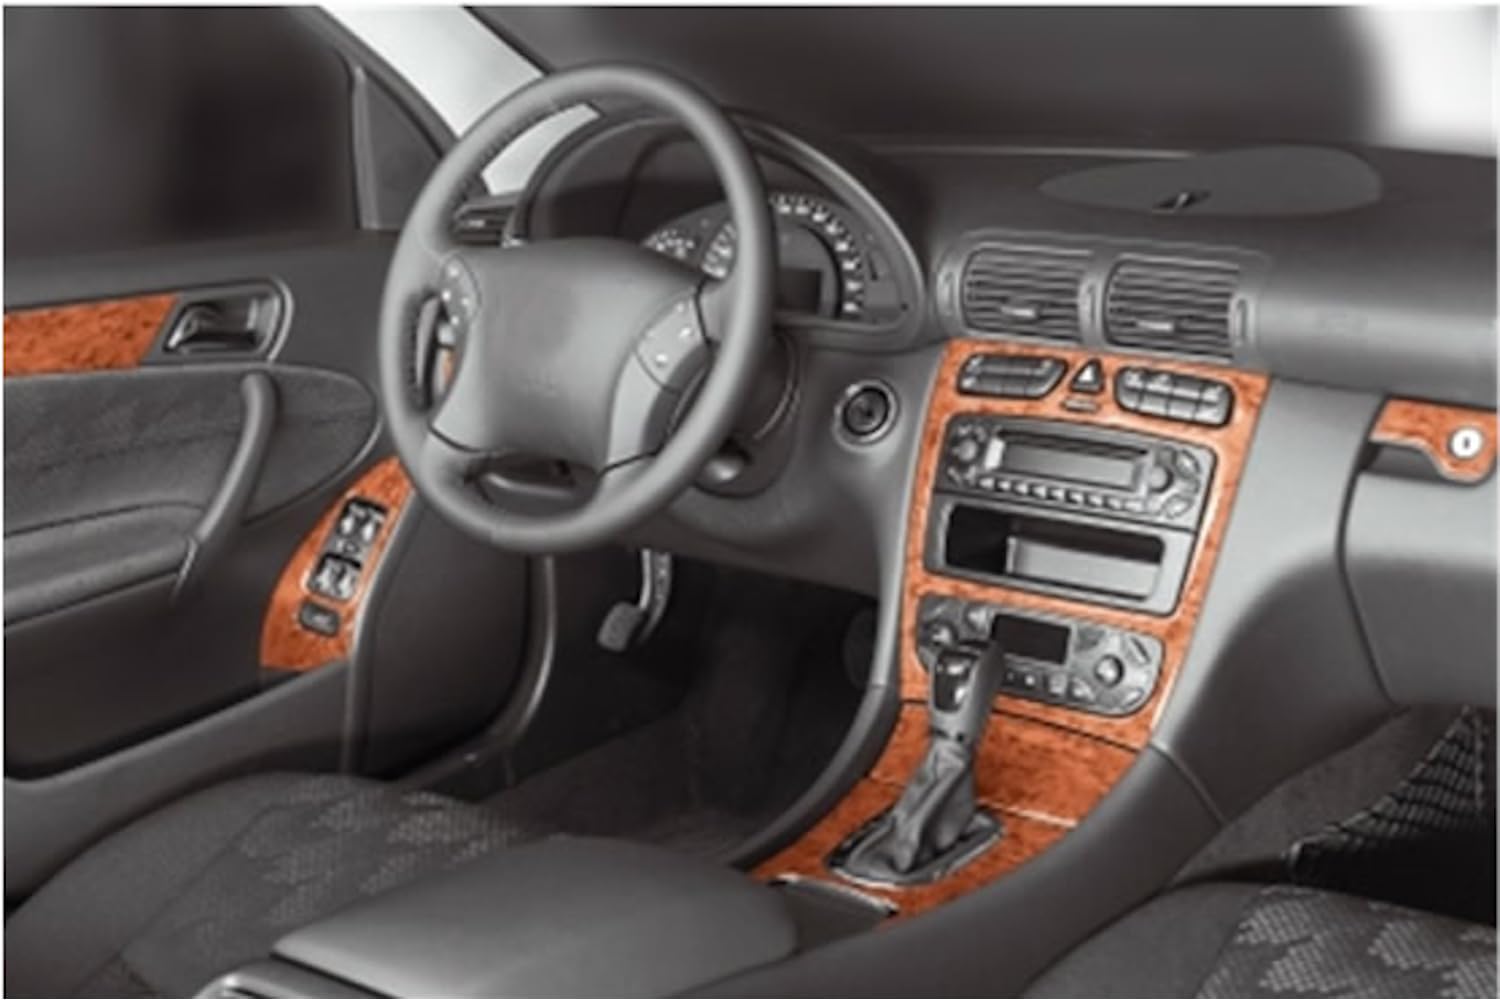 AUTOKLEIDUNG® Cockpit Dekor kompatibel mit Mercedes C Klasse W203 Baujahr 05/2000-12/2006 16 Teile | 3D Klavierlack Optik von Autokleidung